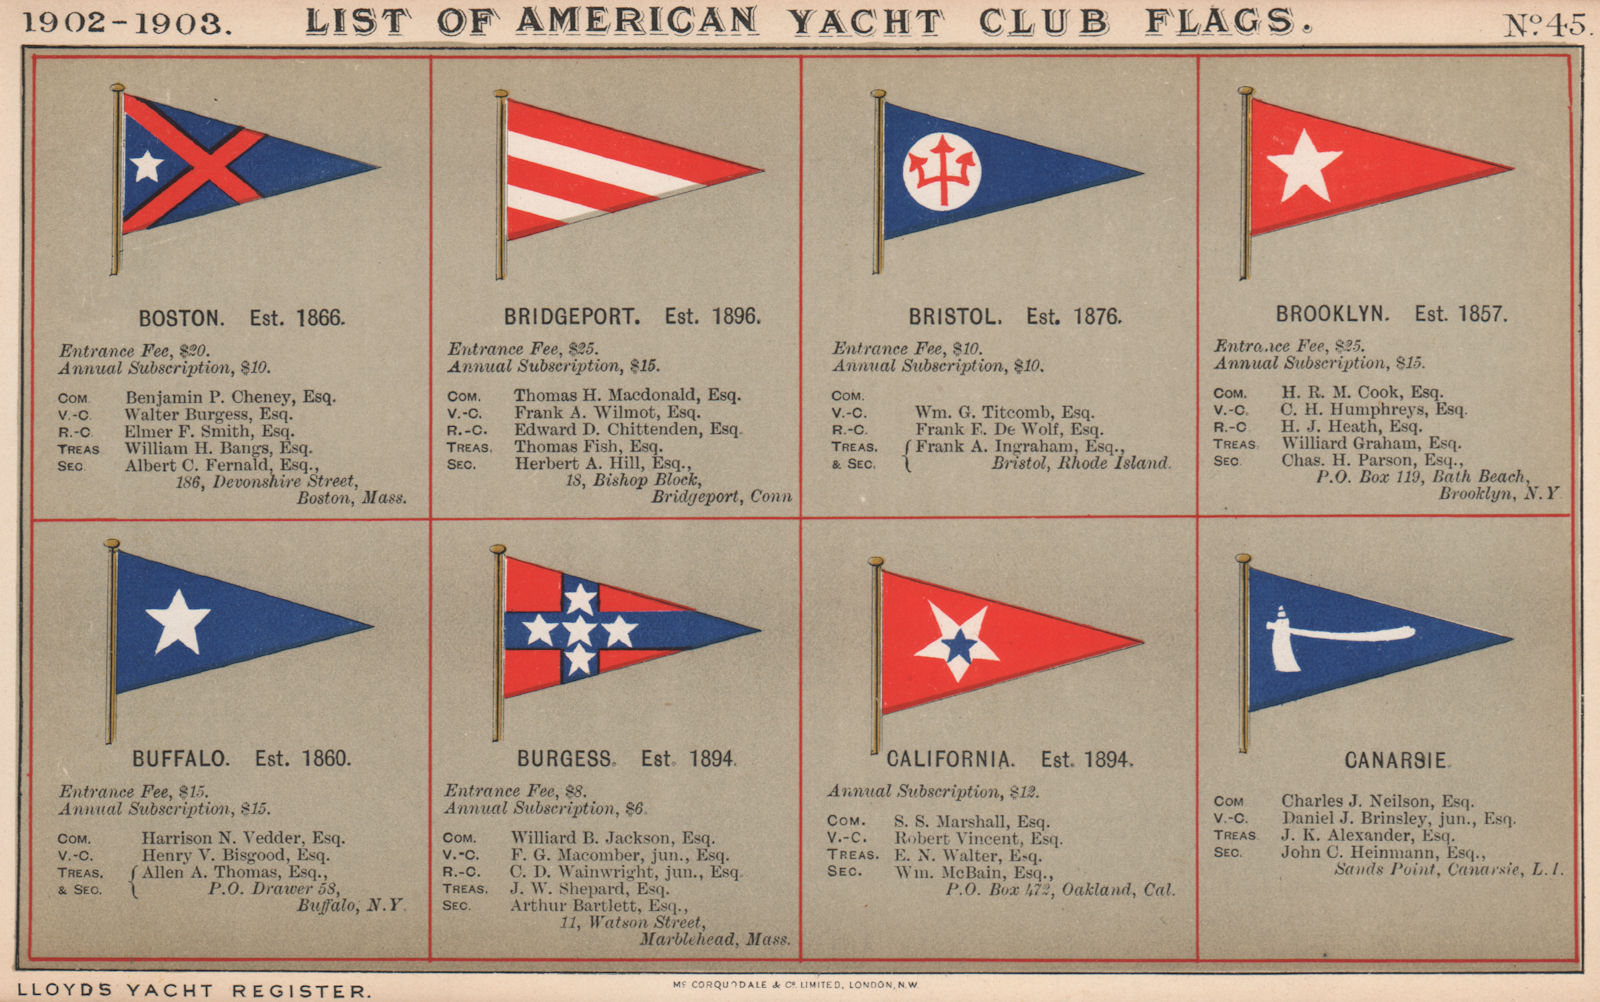 US YACHT CLUB FLAGS B-C. Boston Bridgeport Bristol Brooklyn California 1902